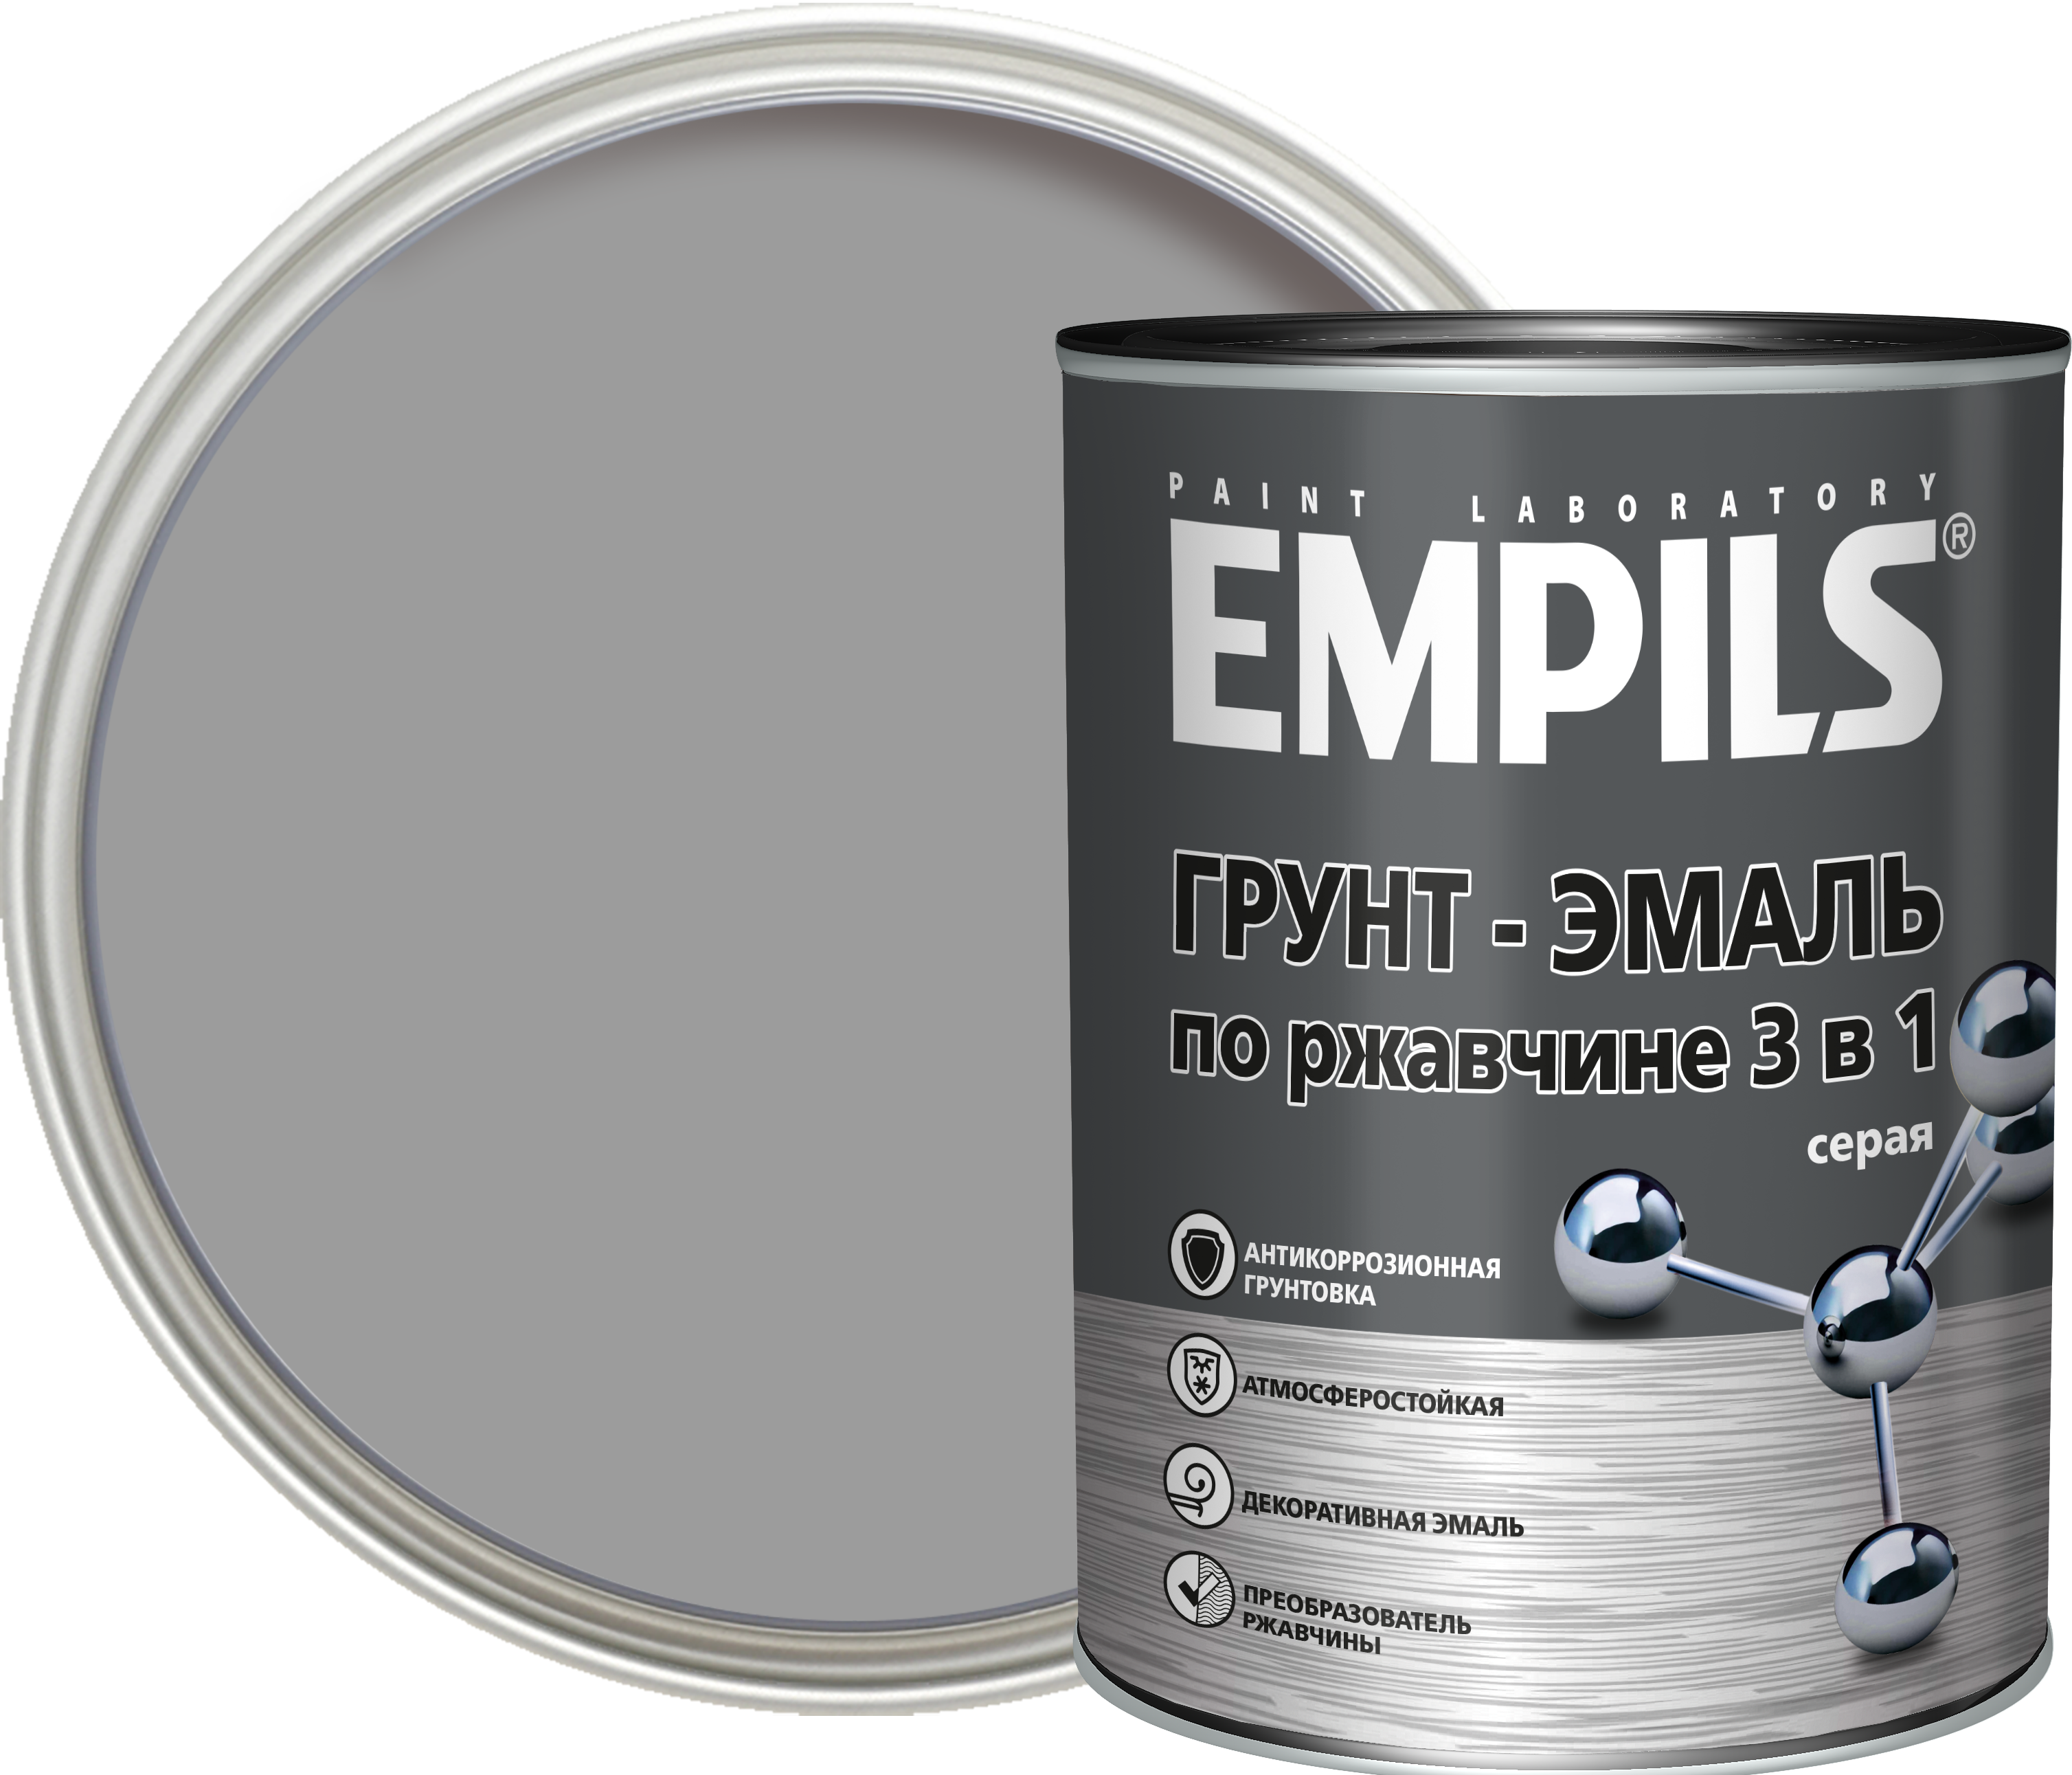 Empils грунт эмаль по ржавчине 3